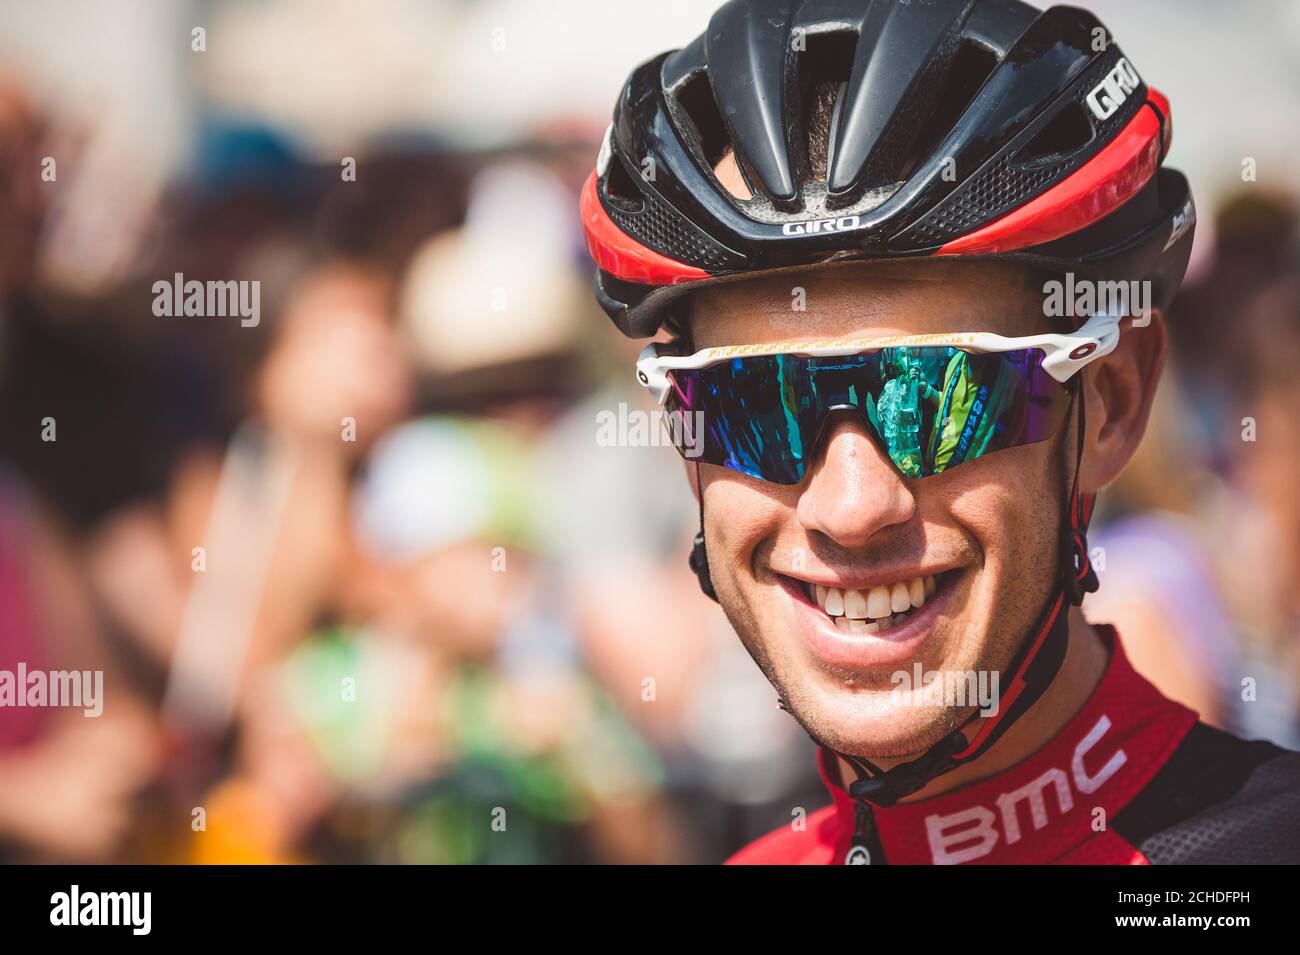 7 luglio 2017, Francia; Ciclismo, Tour de France 7° tappa: Richie Porte. Foto Stock